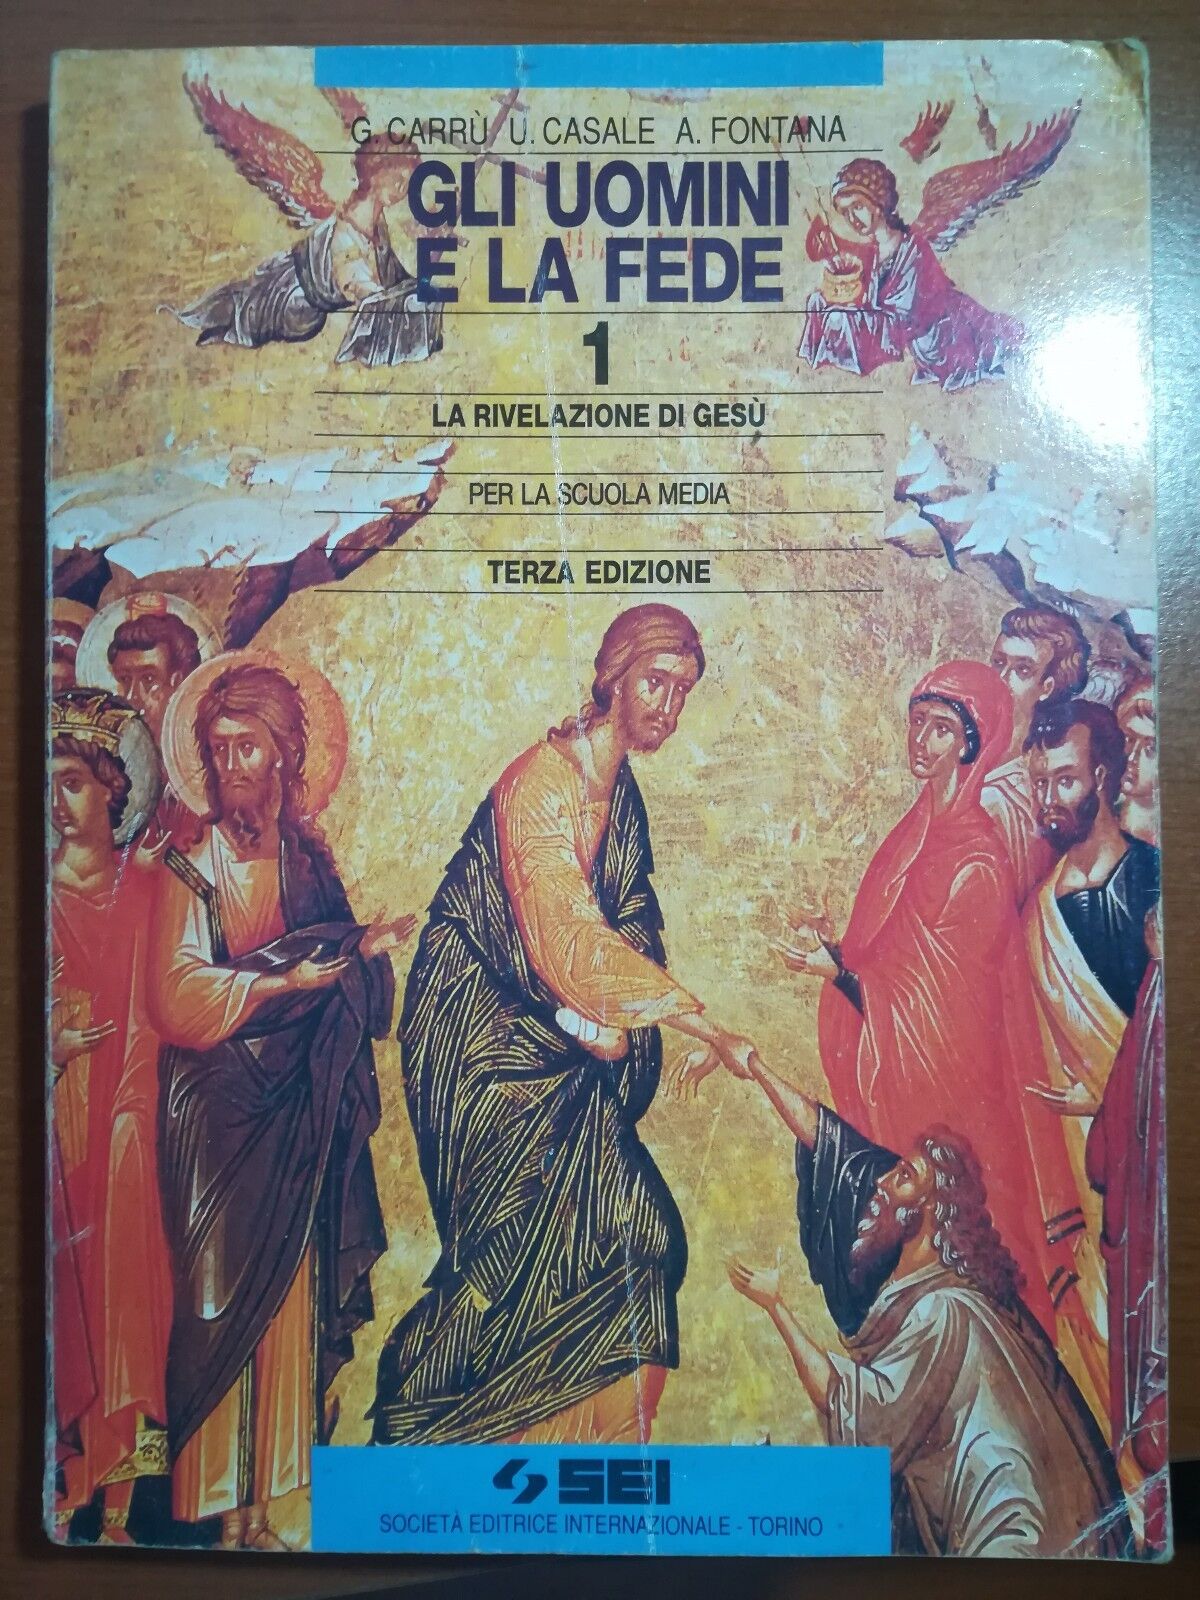 Gli uomini e la fede - G.Carr?,U.Casale,A.Fontana - SEI - 1995 - M